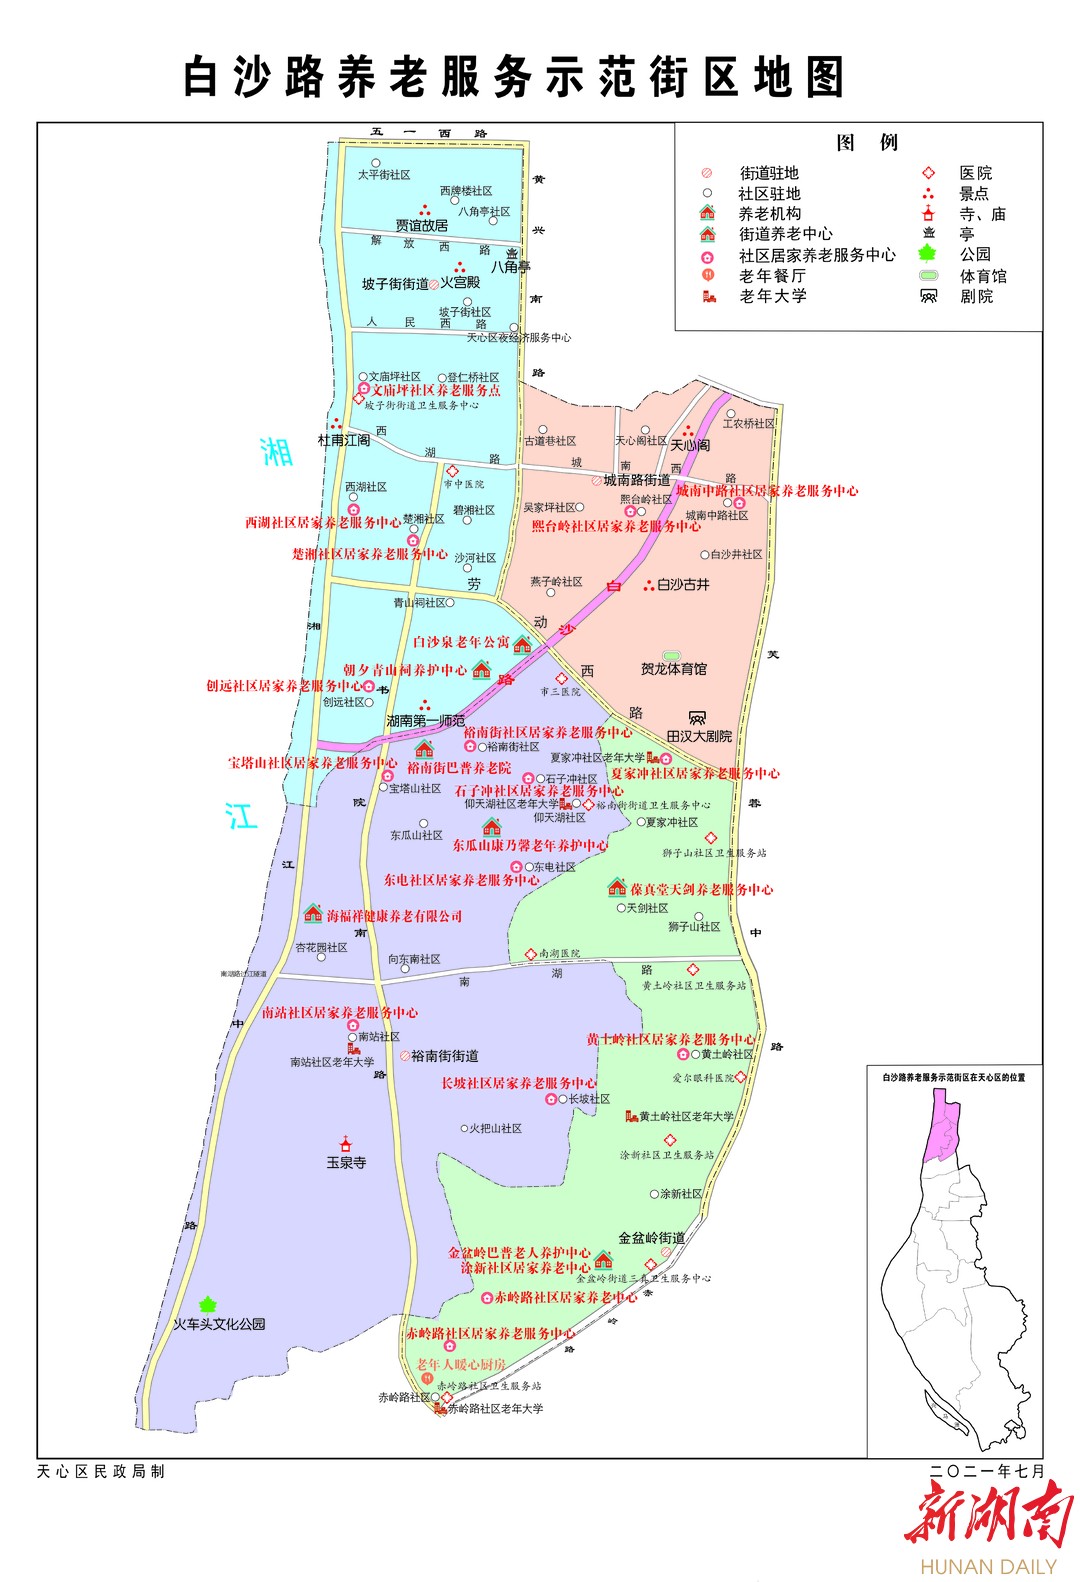 7月26日,记者从长沙市天心区民政局获悉,白沙路养老服务示范街区地图